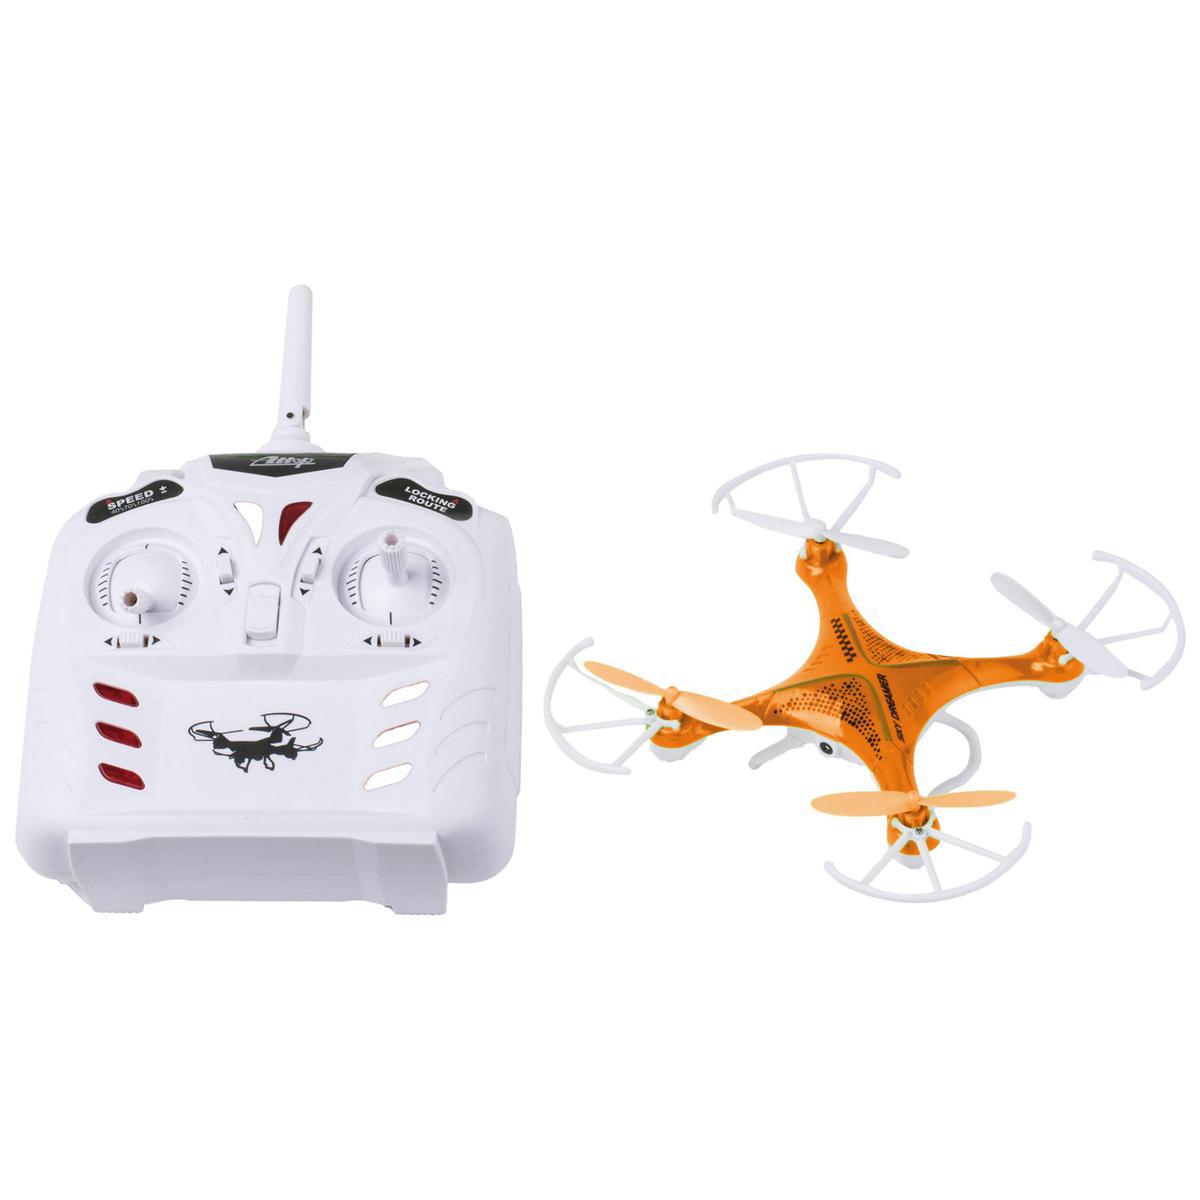 Drone caméra - Plastique - 19 x 19 x H 5 cm - Orange ou vert